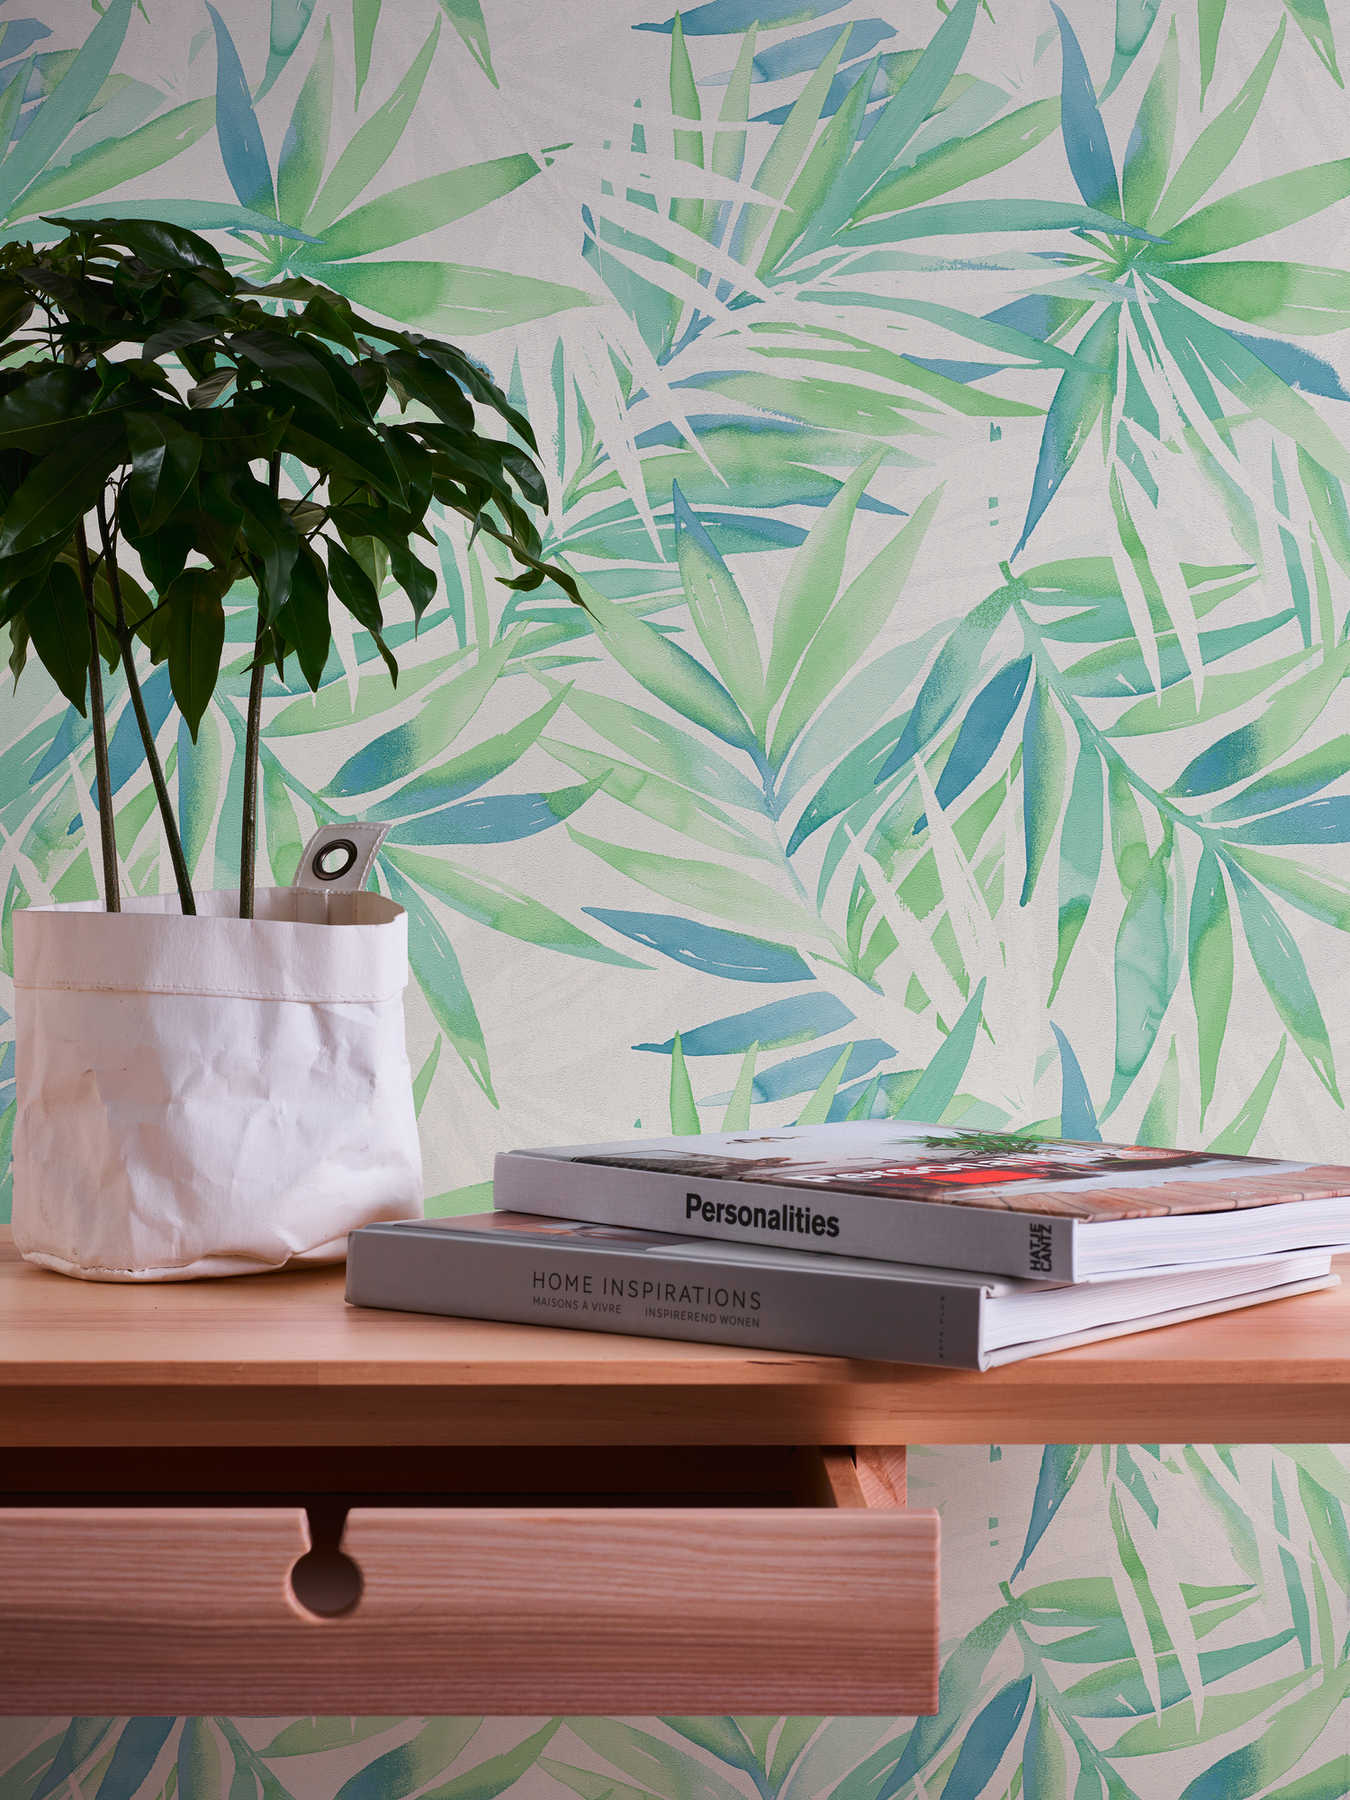             Papel pintado selva con motivo de hojas en estilo acuarela - verde
        